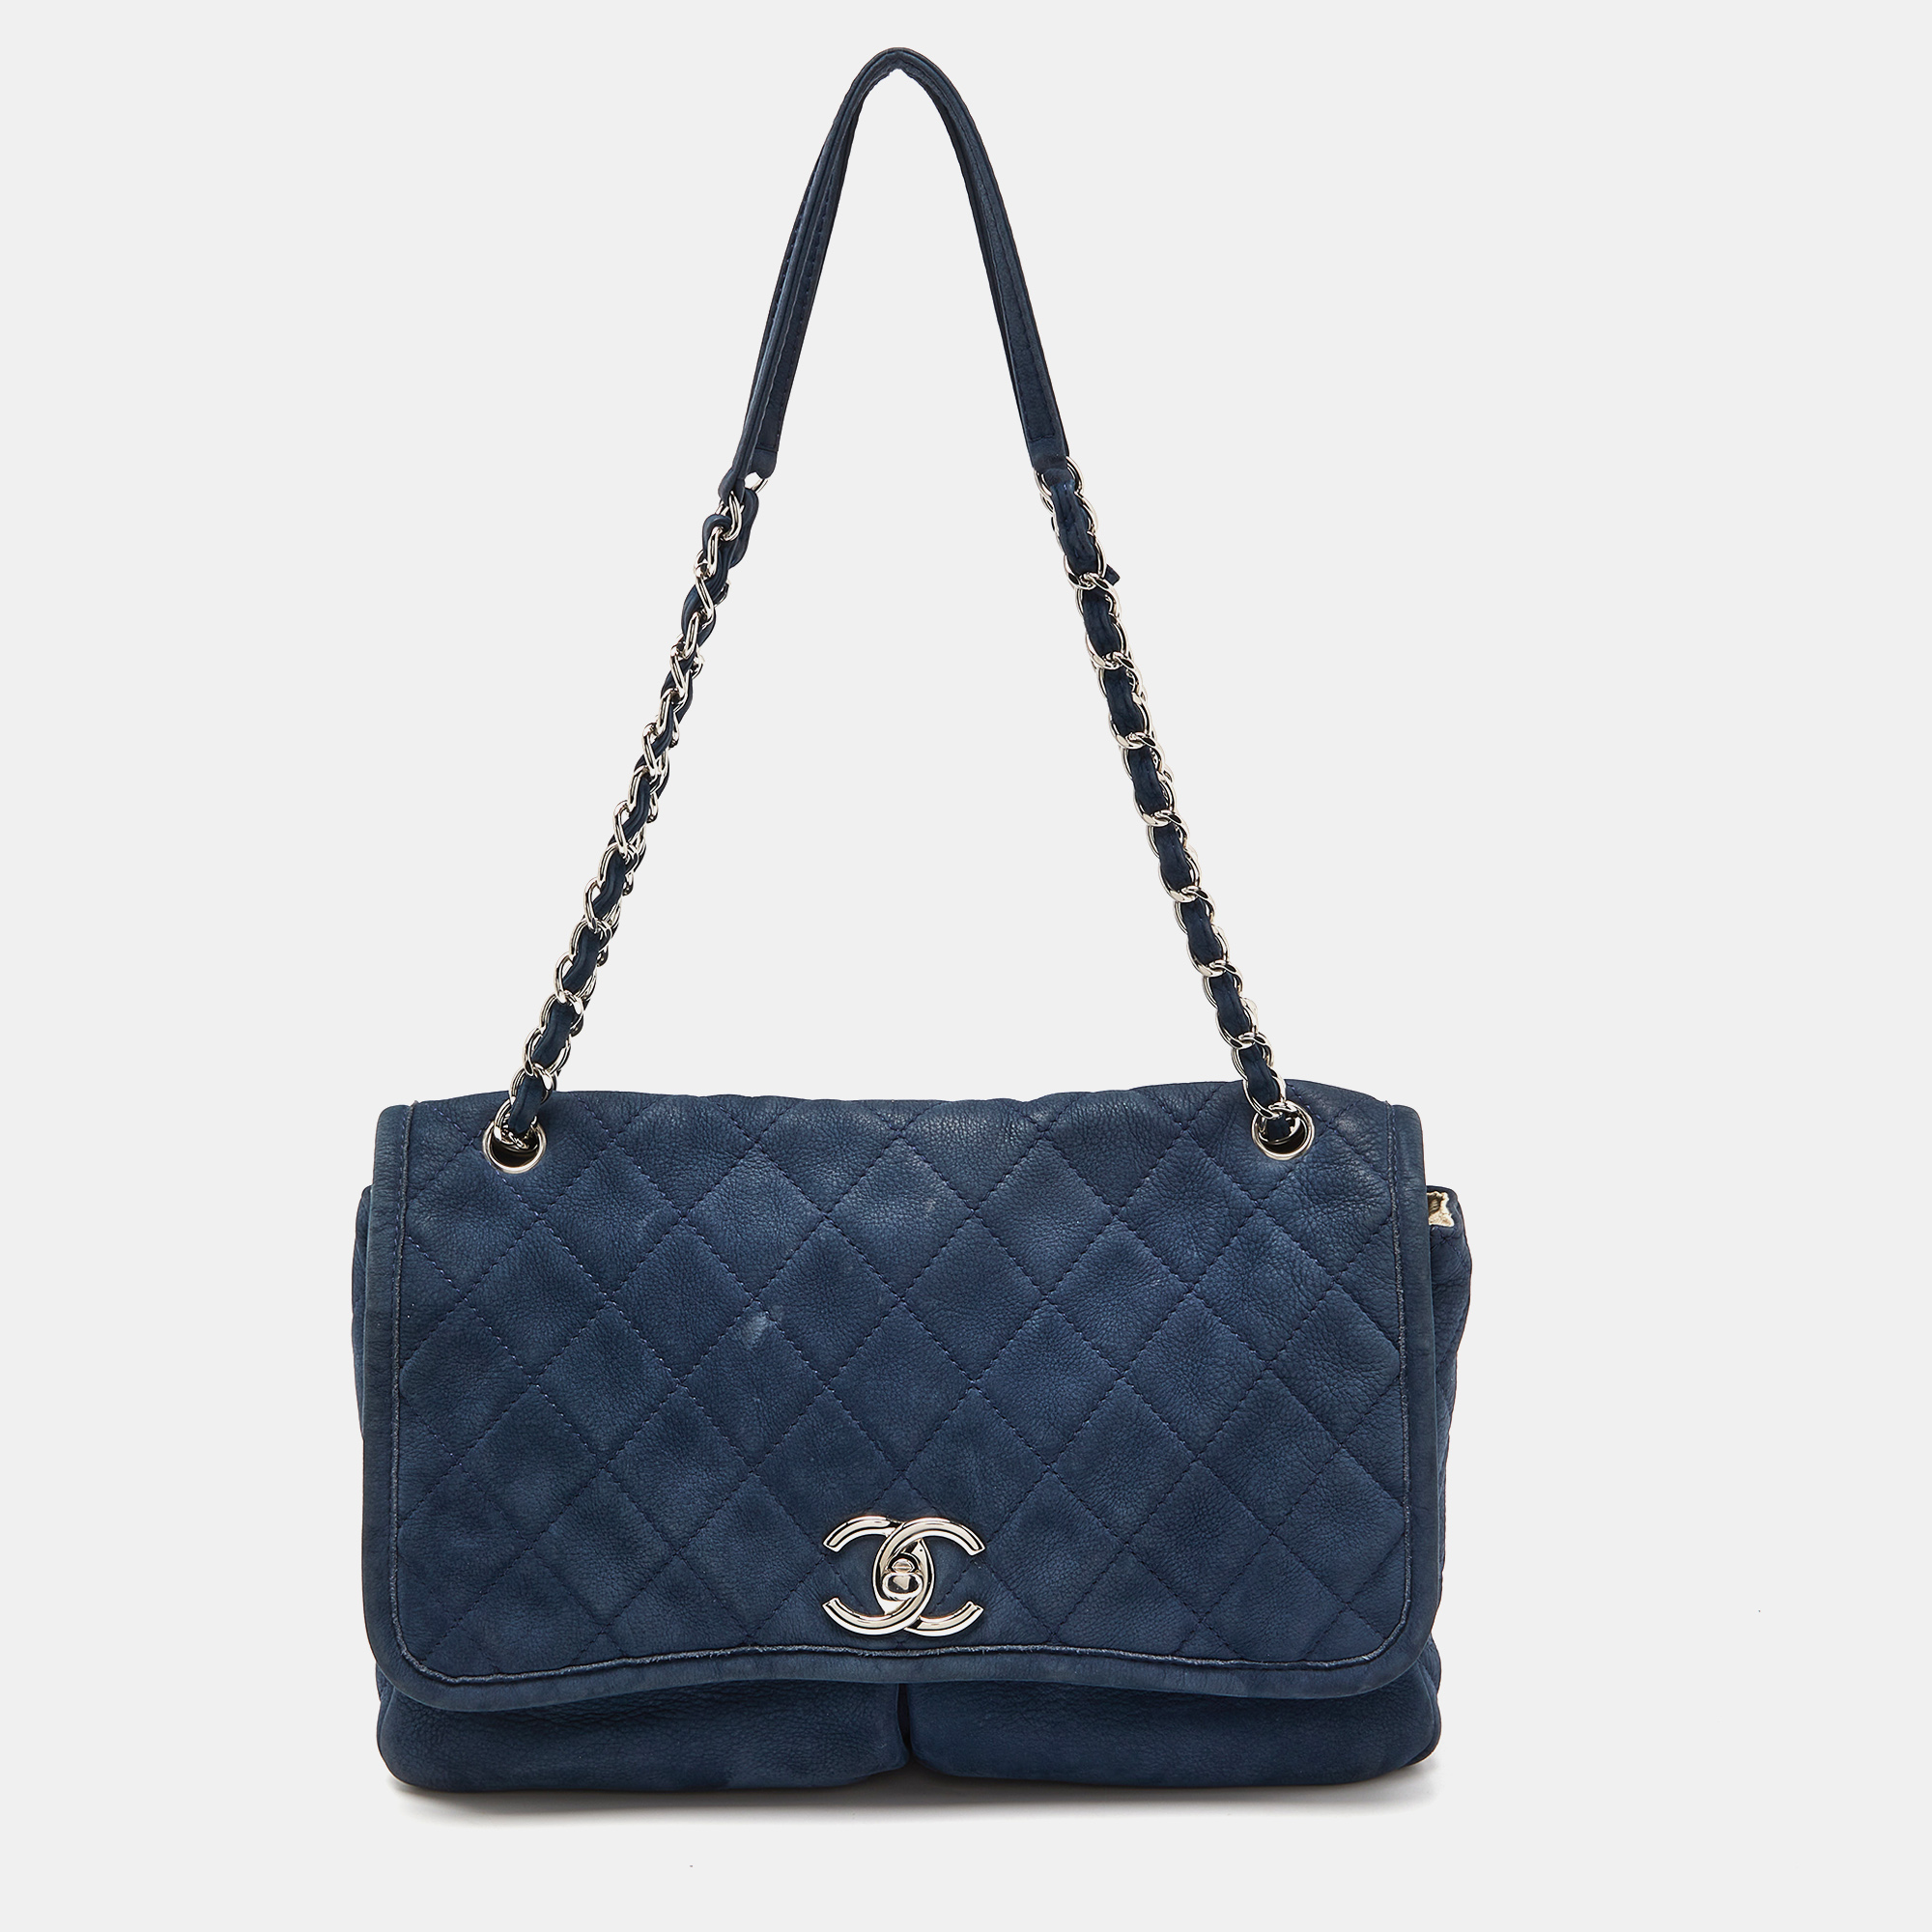 Chanel blue quilted nubuck leather large split pocket flap bag